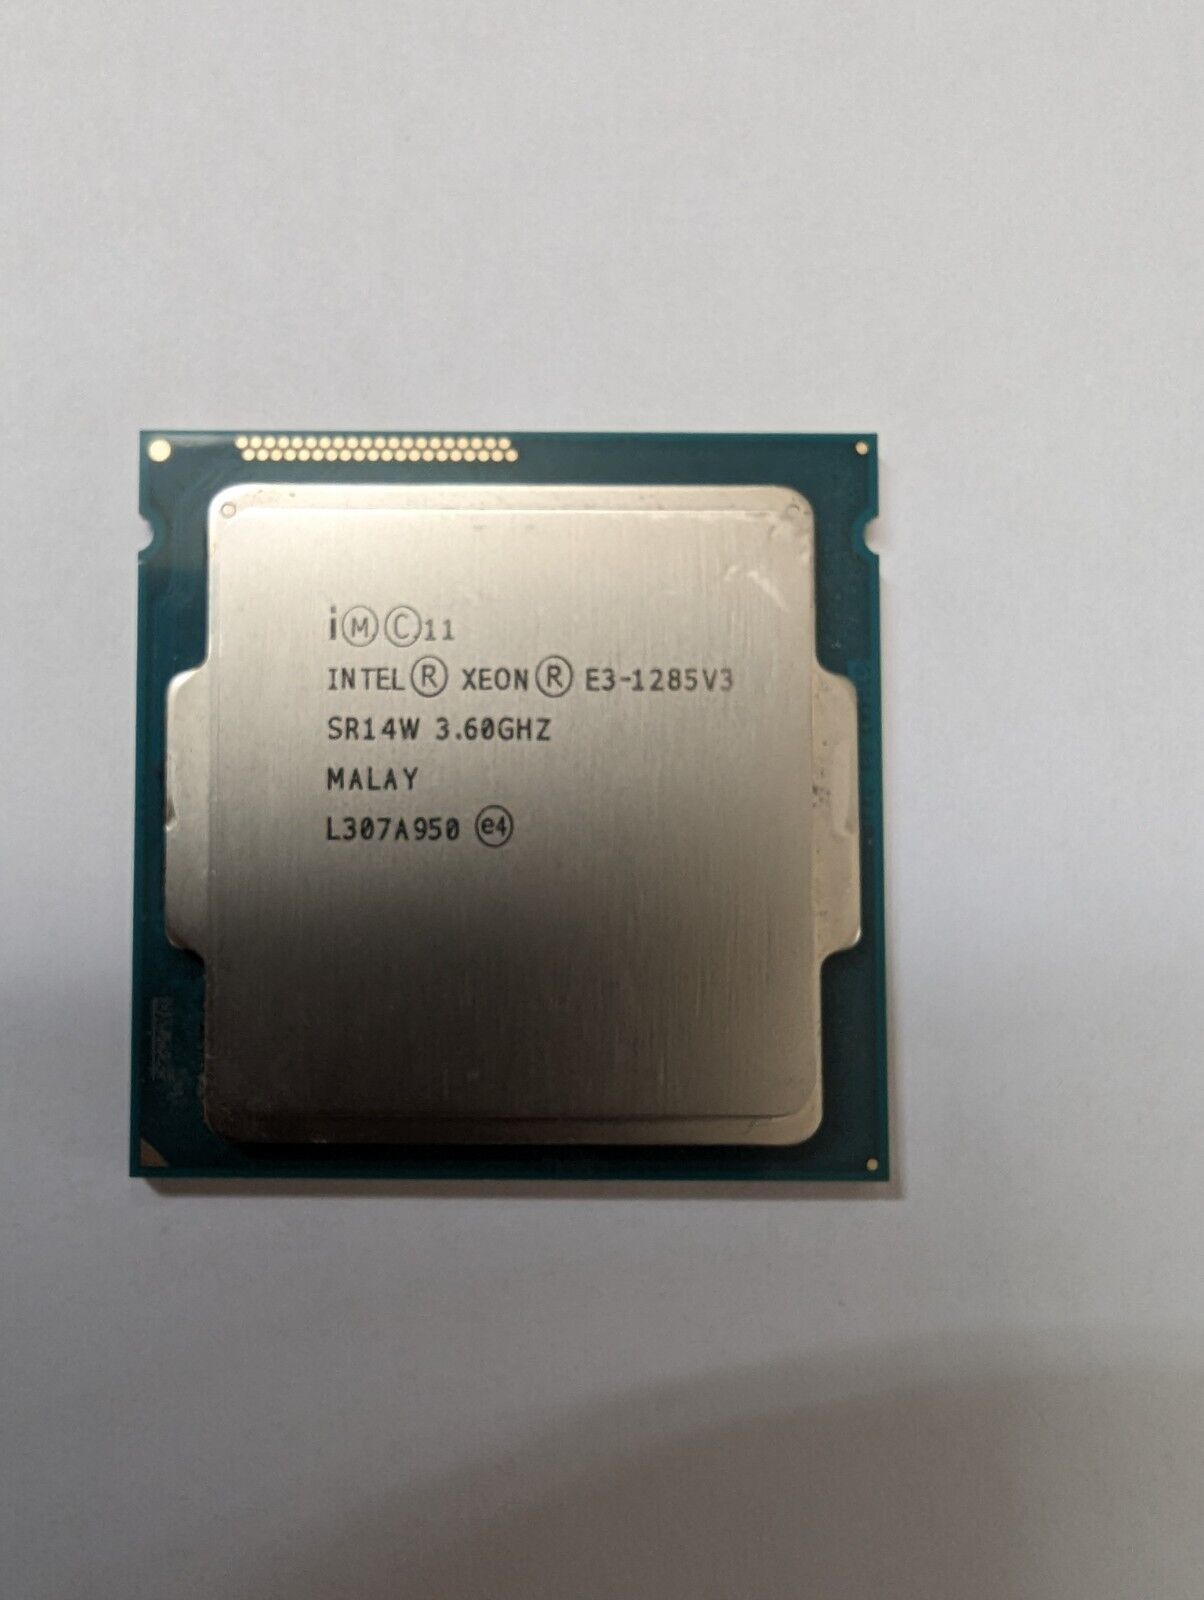 Intel Xeon E3-1285 V3 3.6 GHz 8M Quad-Core SR14W CPU Processor